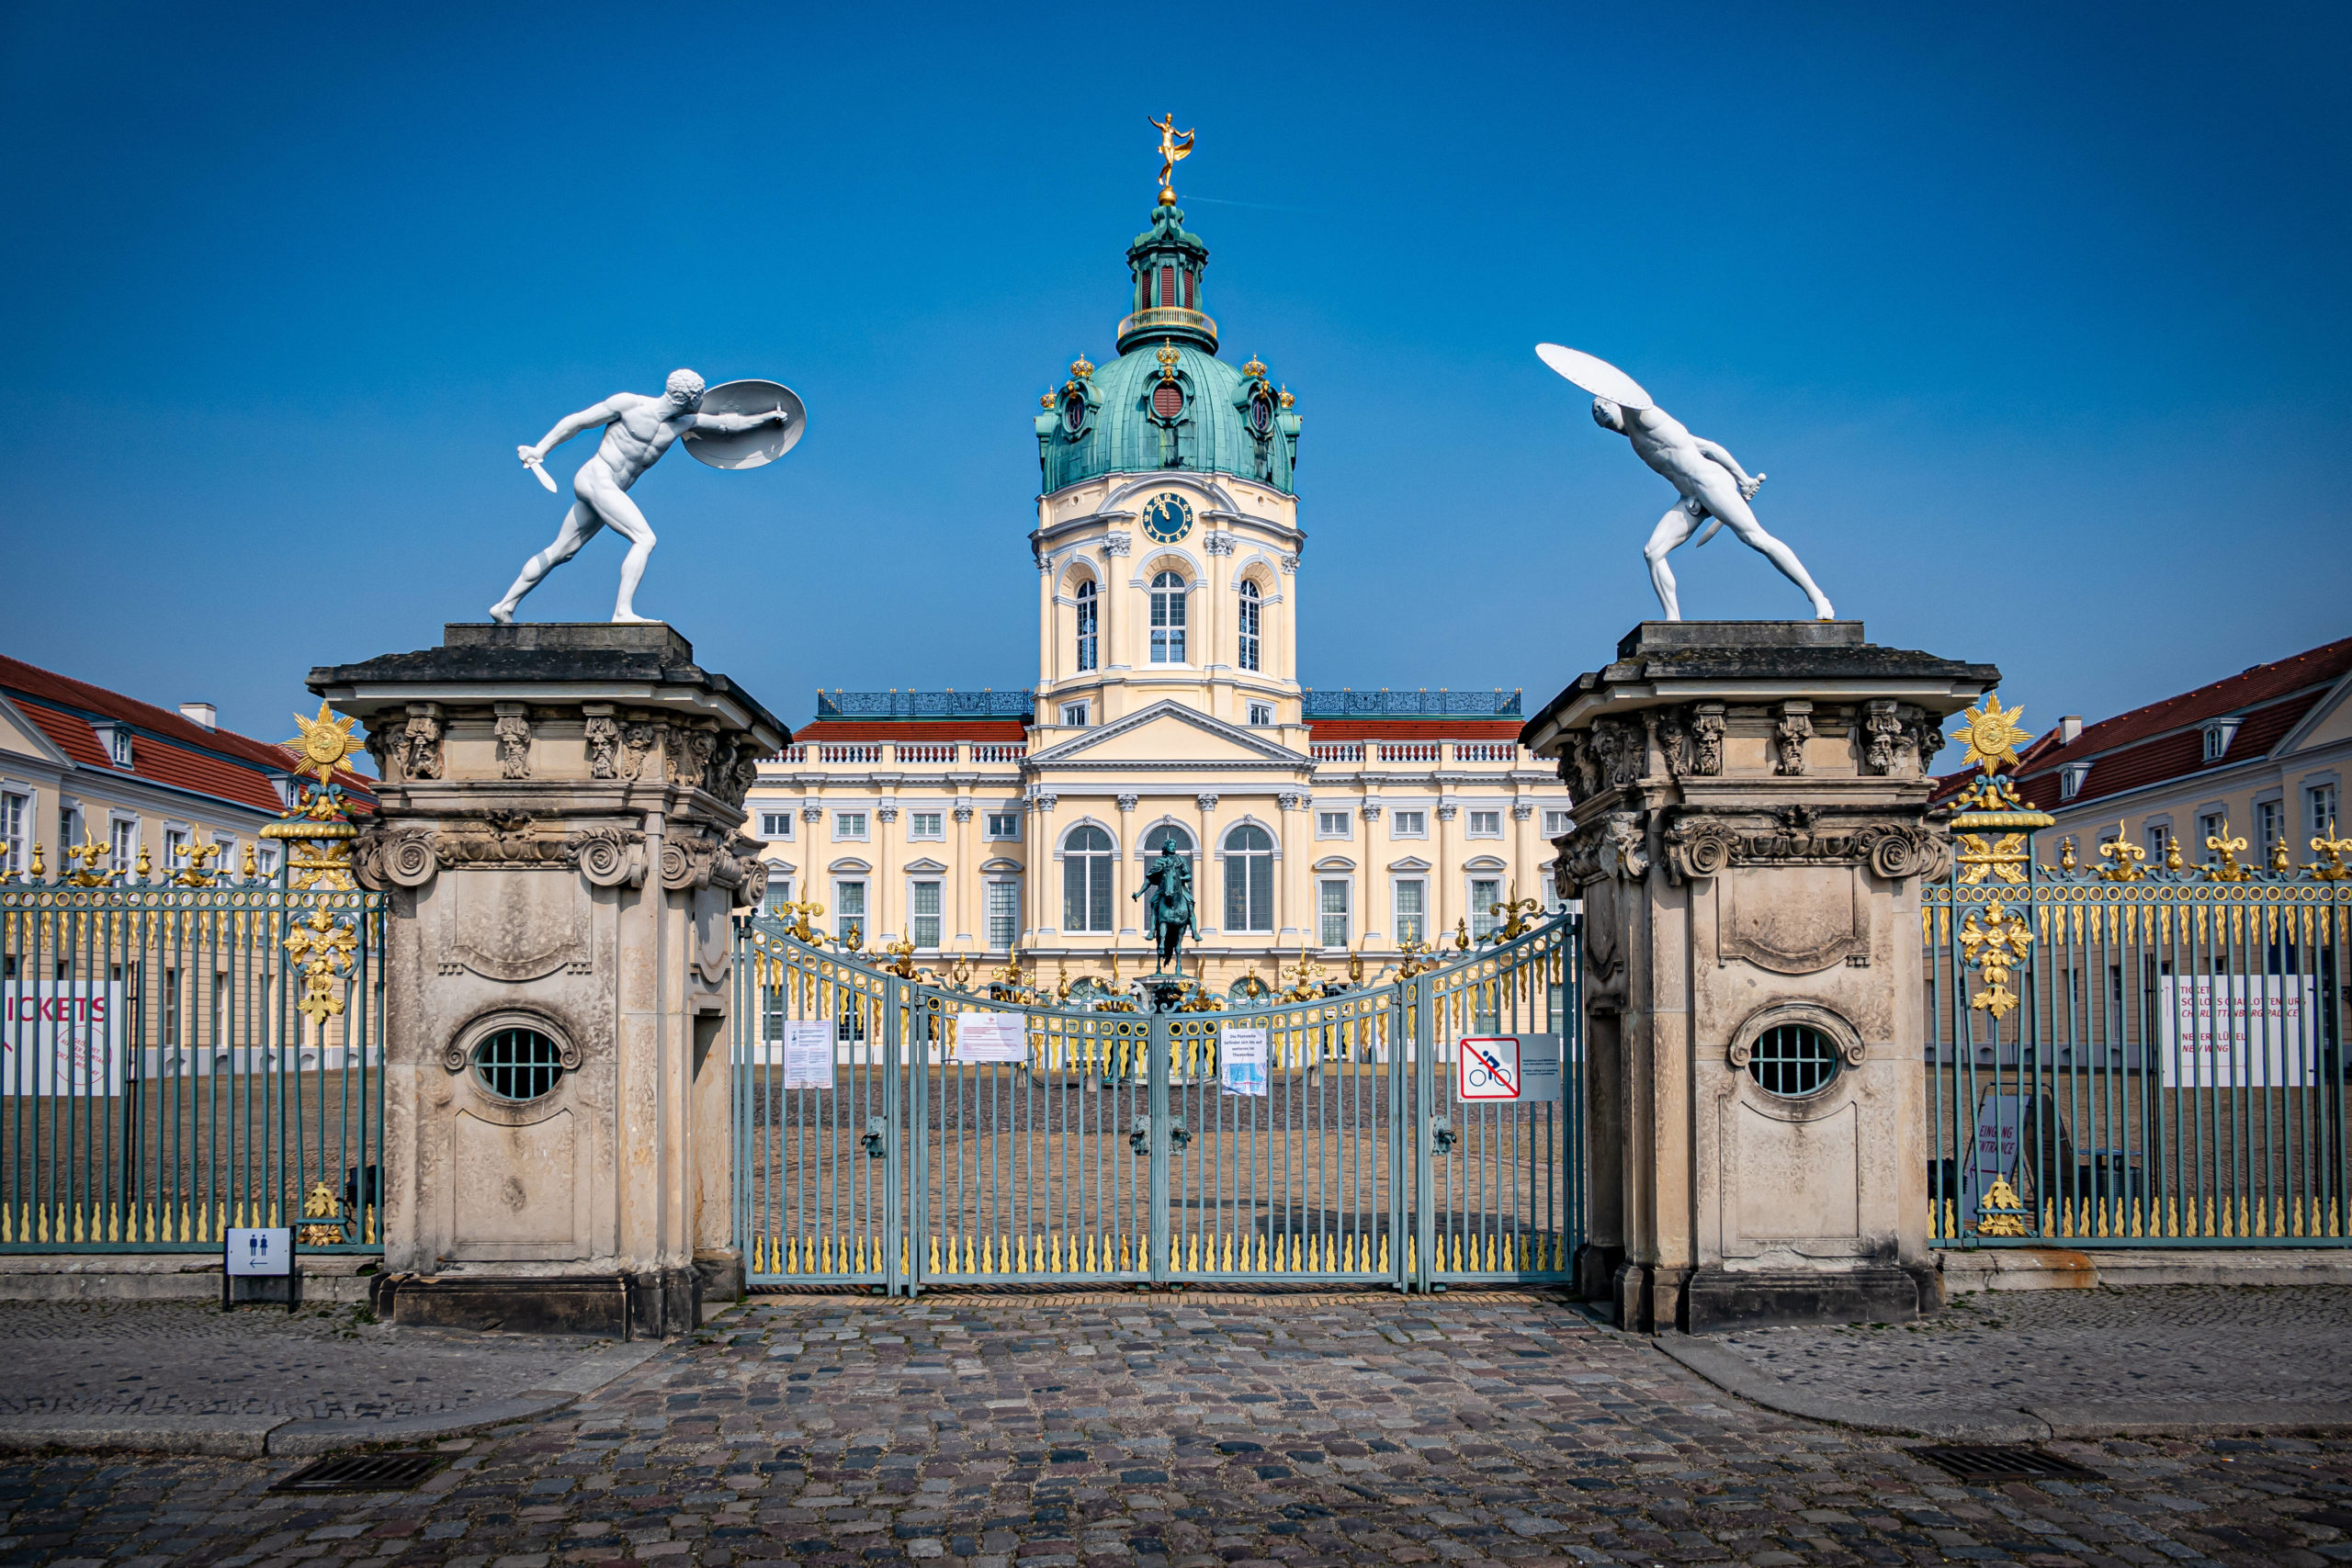 Ein neues Freiluftkino in Berlin: Am Schloss Charlottenburg laufen 2021 Filme unter freiem Himmel. Foto: Imago/Jürgen Ritter